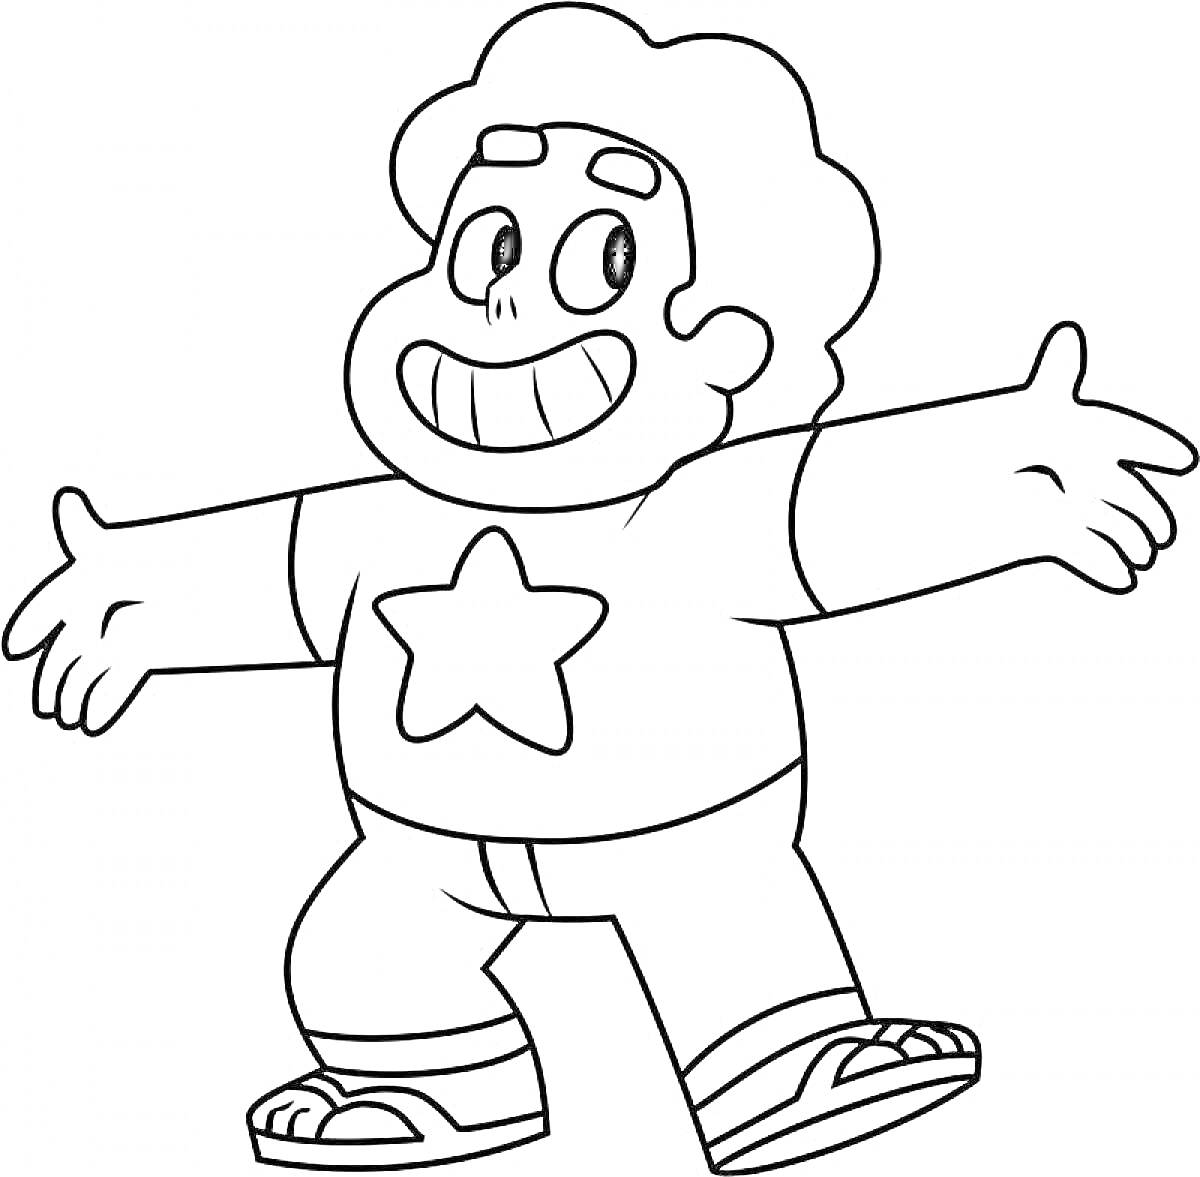 Раскраска персонажа из мультфильма 